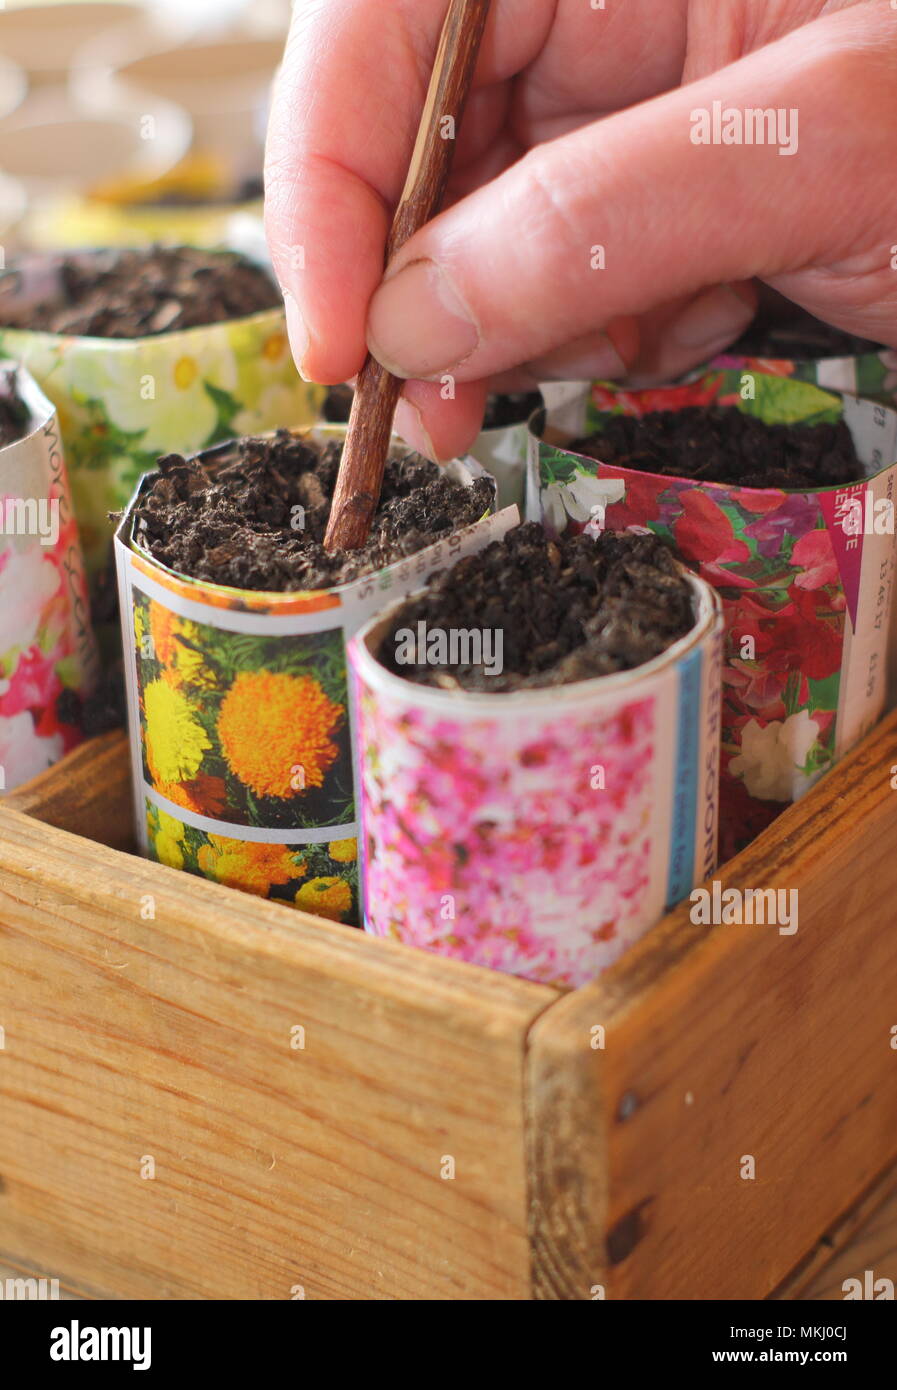 Lathyrus Odoratus. Die Bohrung in der Blumenerde Sweet pea Samen in Recyclingpapier Töpfe als Alternative zu Kunststoff im Gartenbau zu säen, Großbritannien Stockfoto